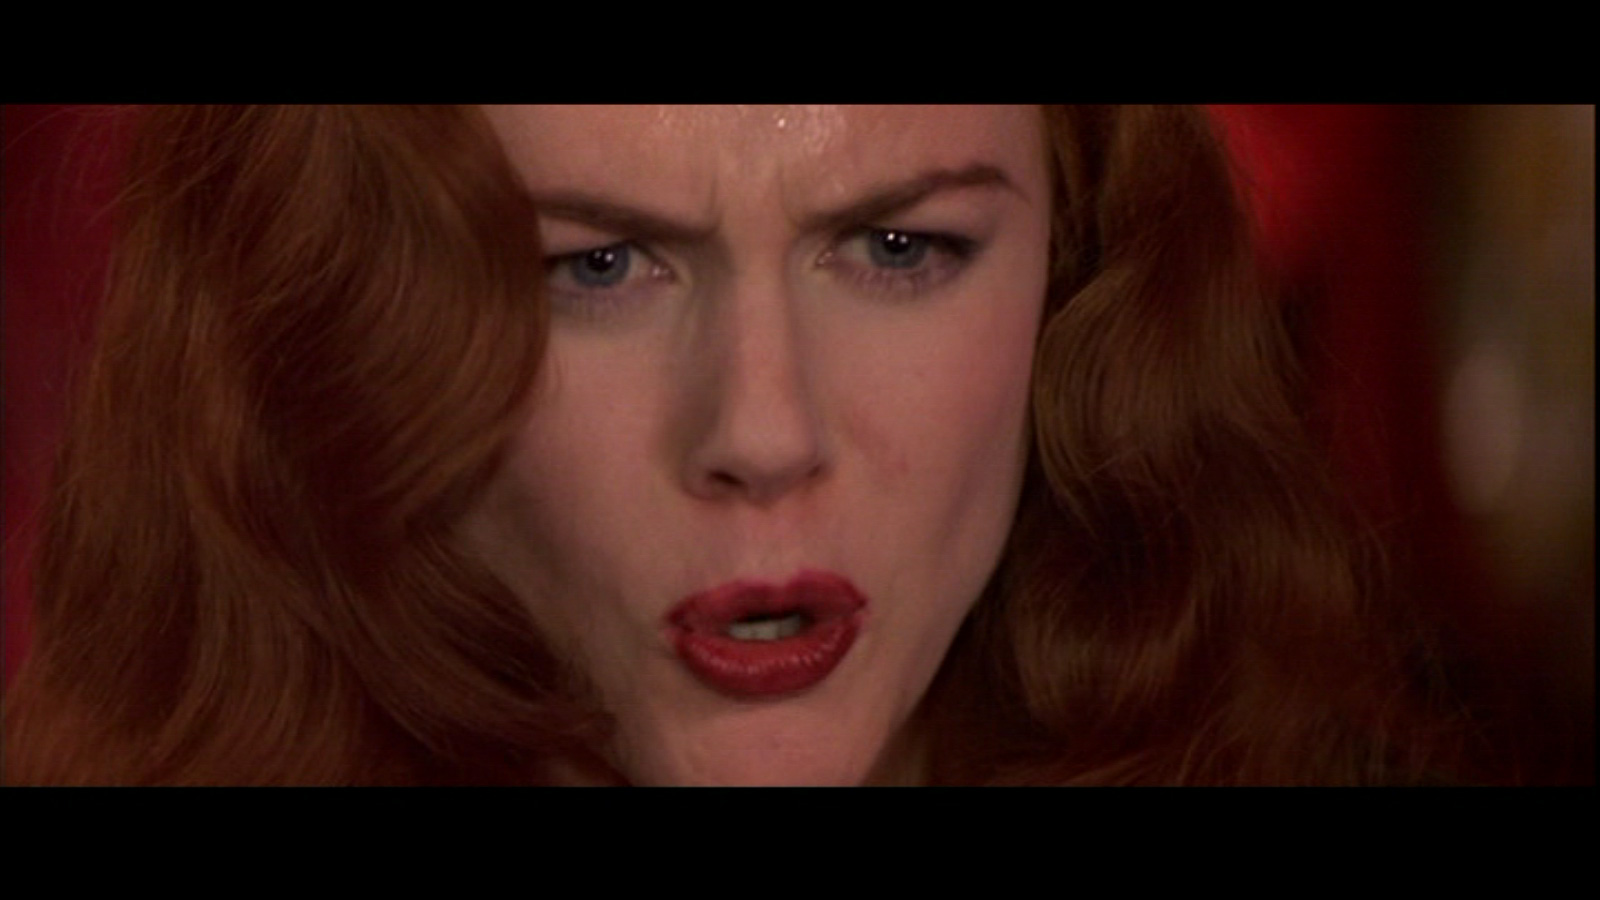 Moulin Rouge - Nicole Kidman Image (23851101) - Fanpop1600 x 900